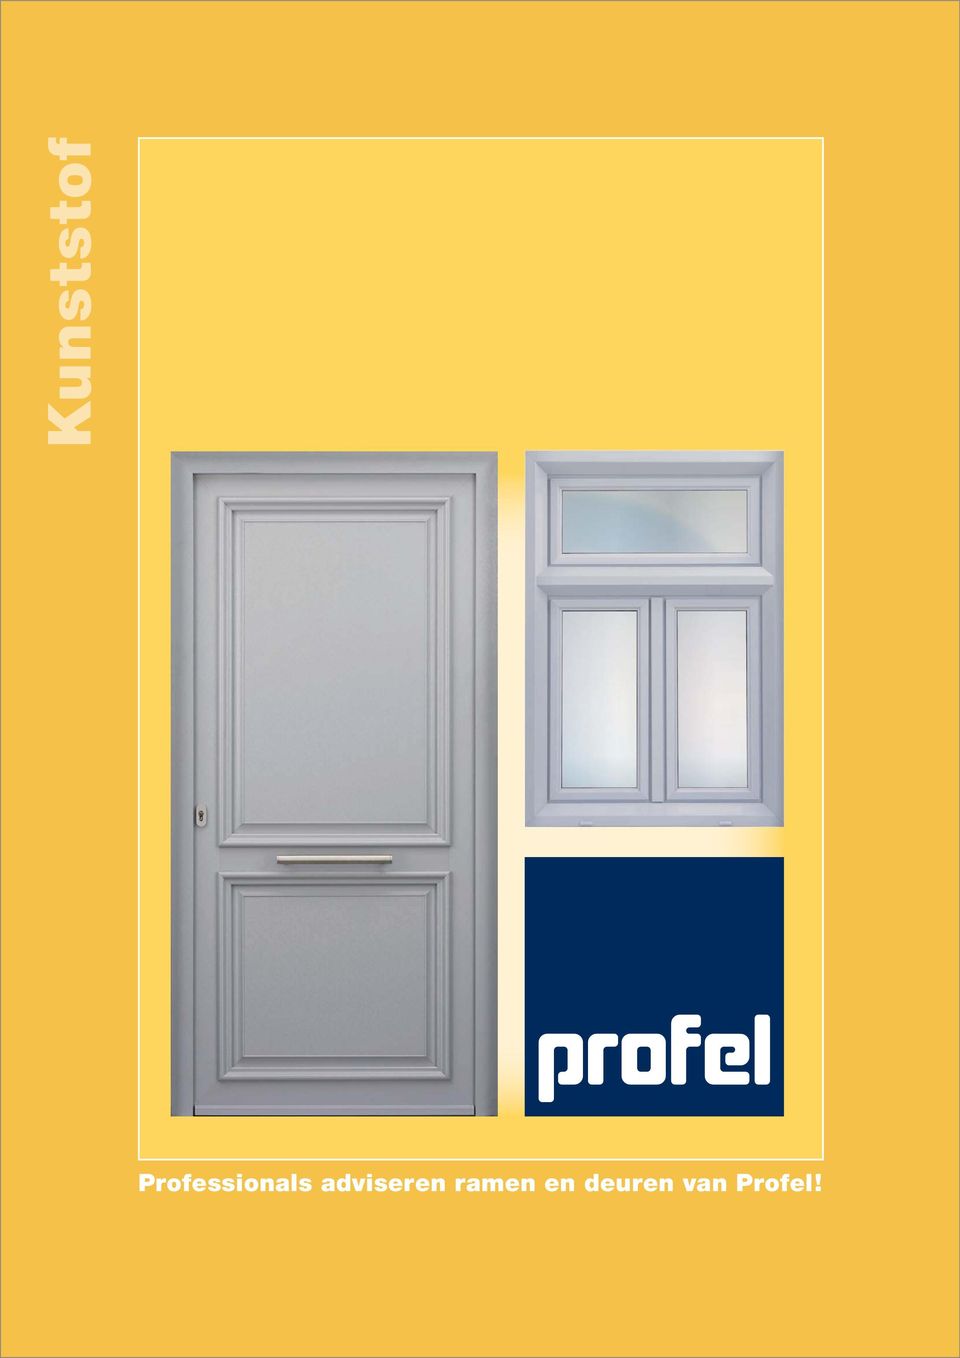 Professionals adviseren ramen en deuren van Profel! - PDF Free Download